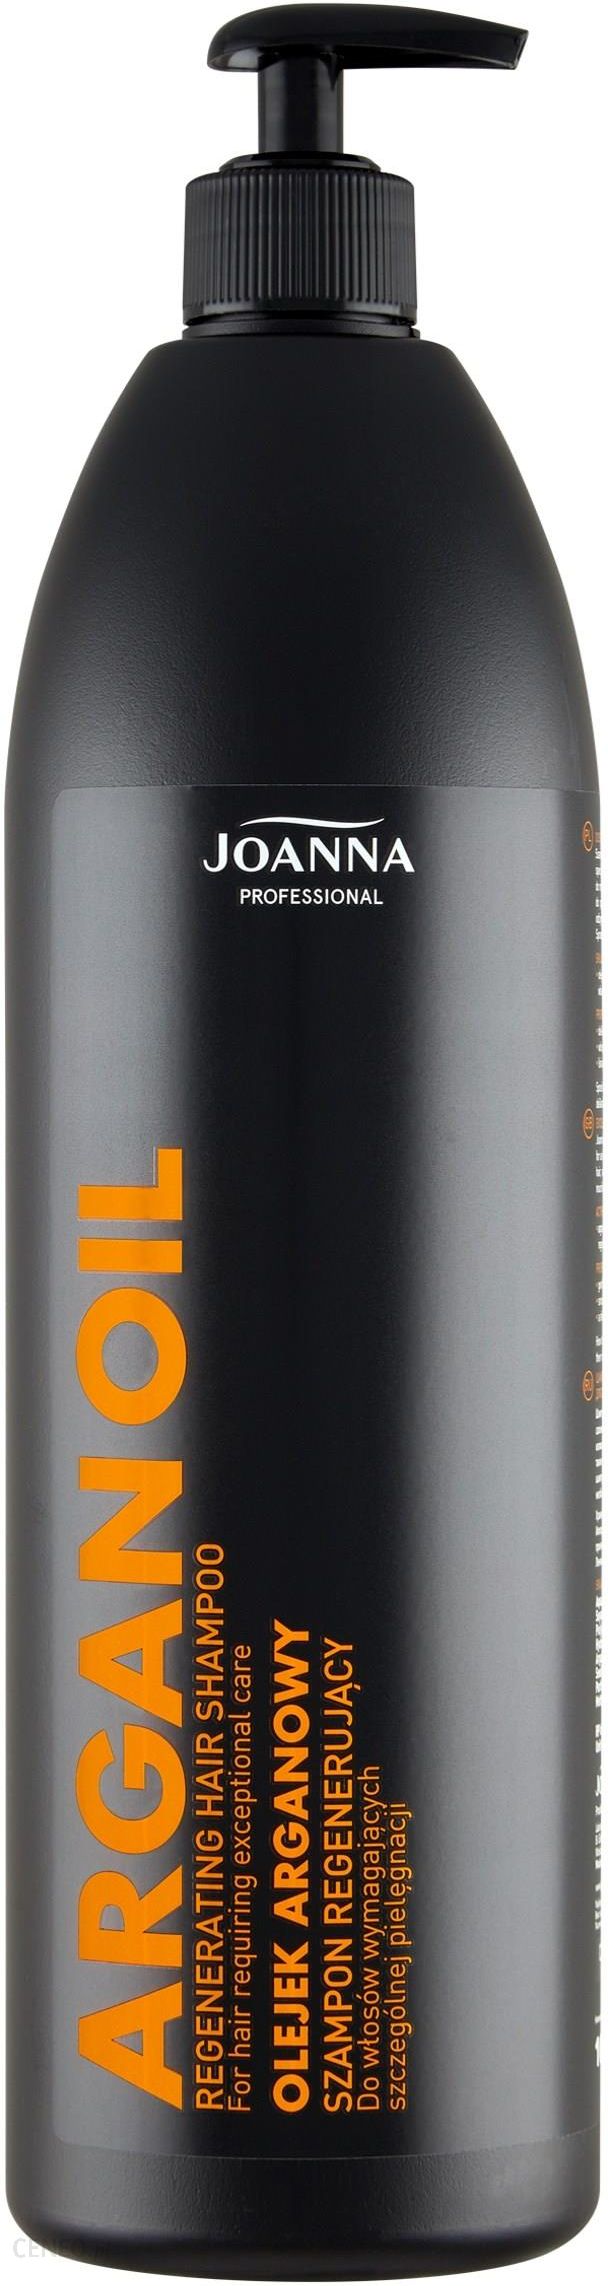 joanna professional szampon do włosów opinie